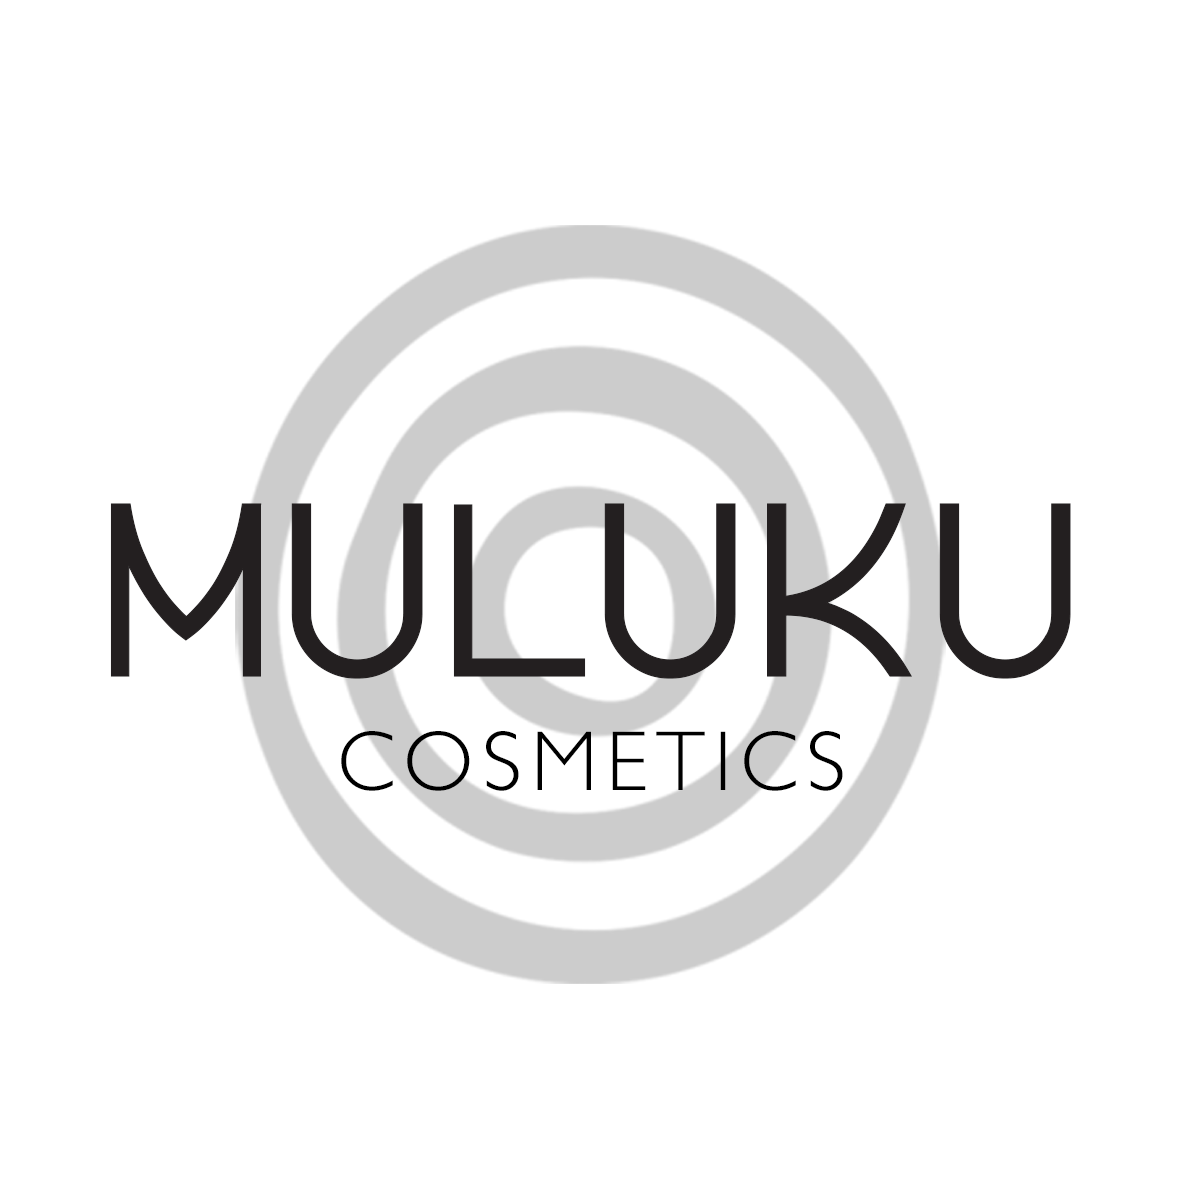 Muluku Cosmetics